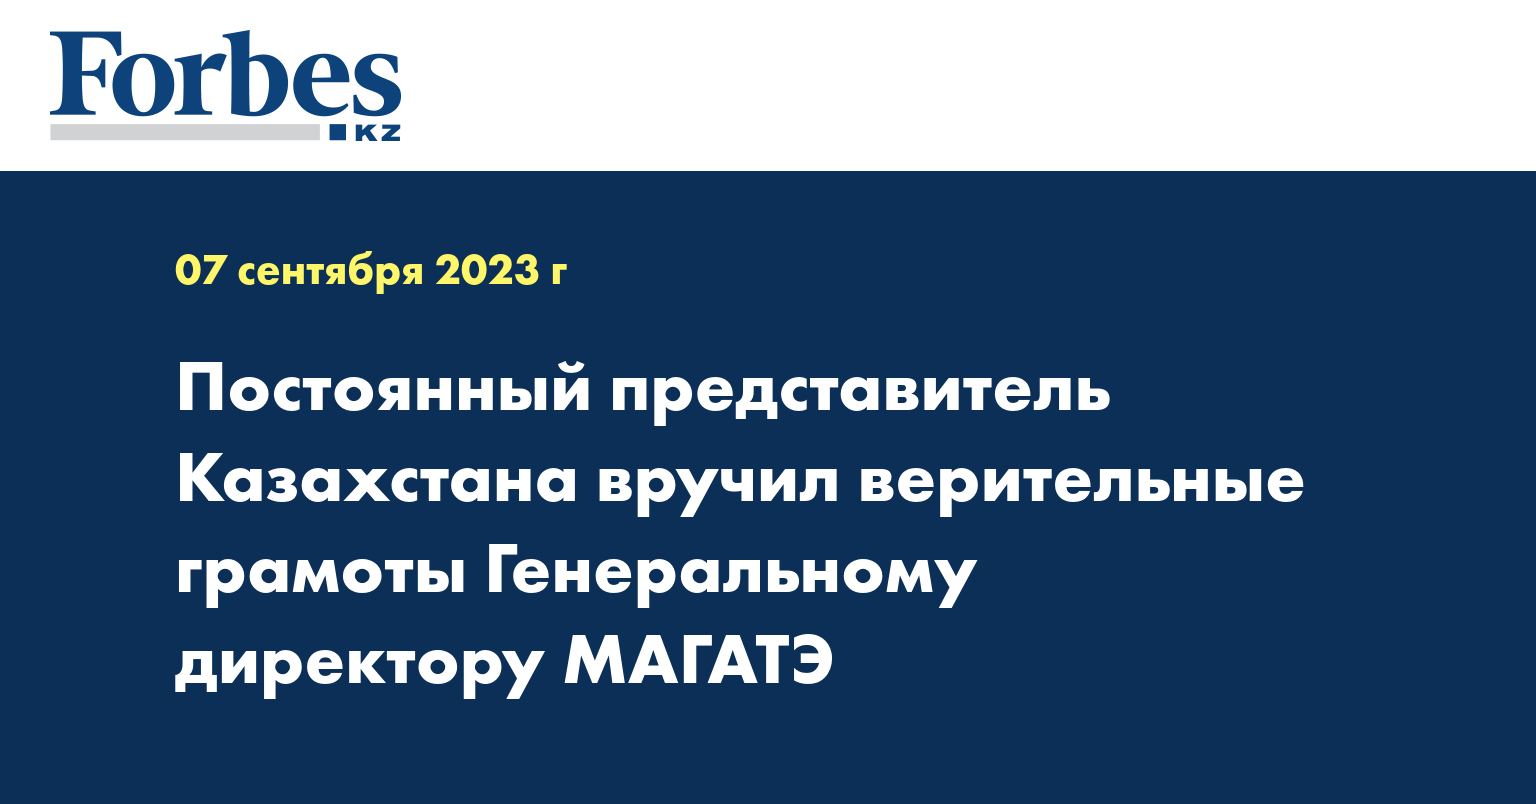 Постоянный представитель Казахстана вручил верительные грамоты генеральному директору МАГАТЭ